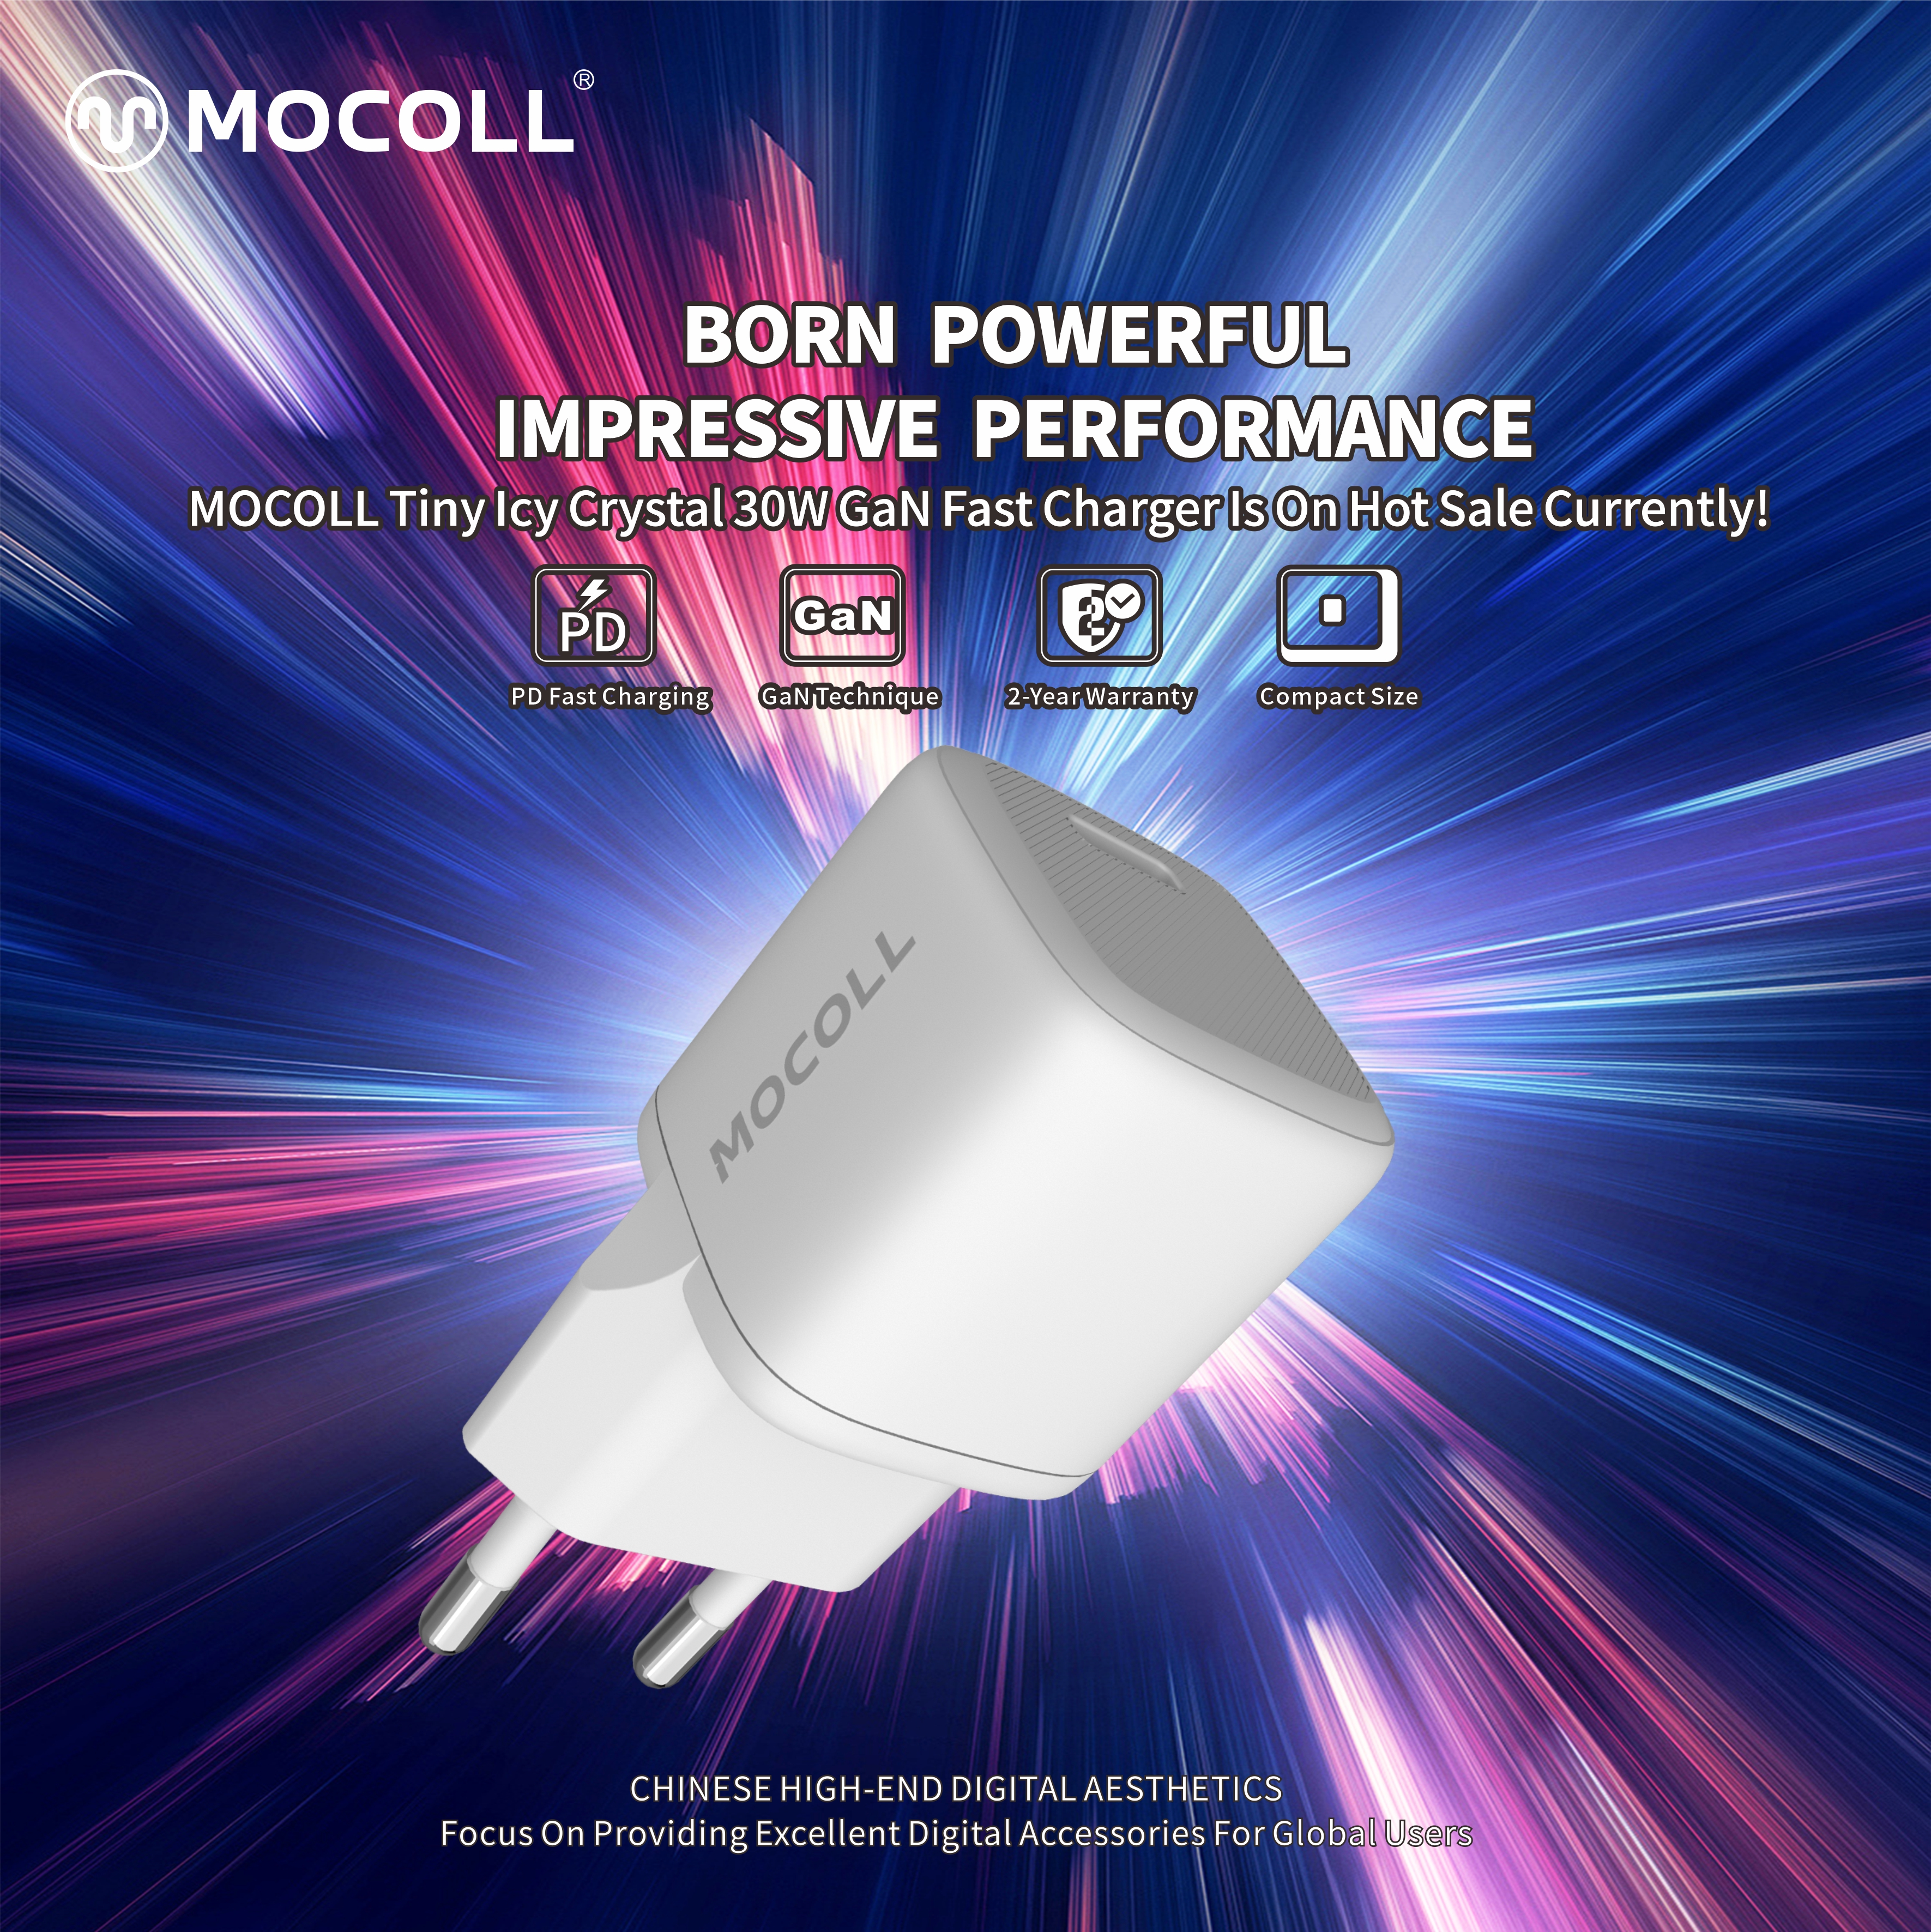 강력한 탄생 | MOCOLL의 신제품이 출시되었습니다!